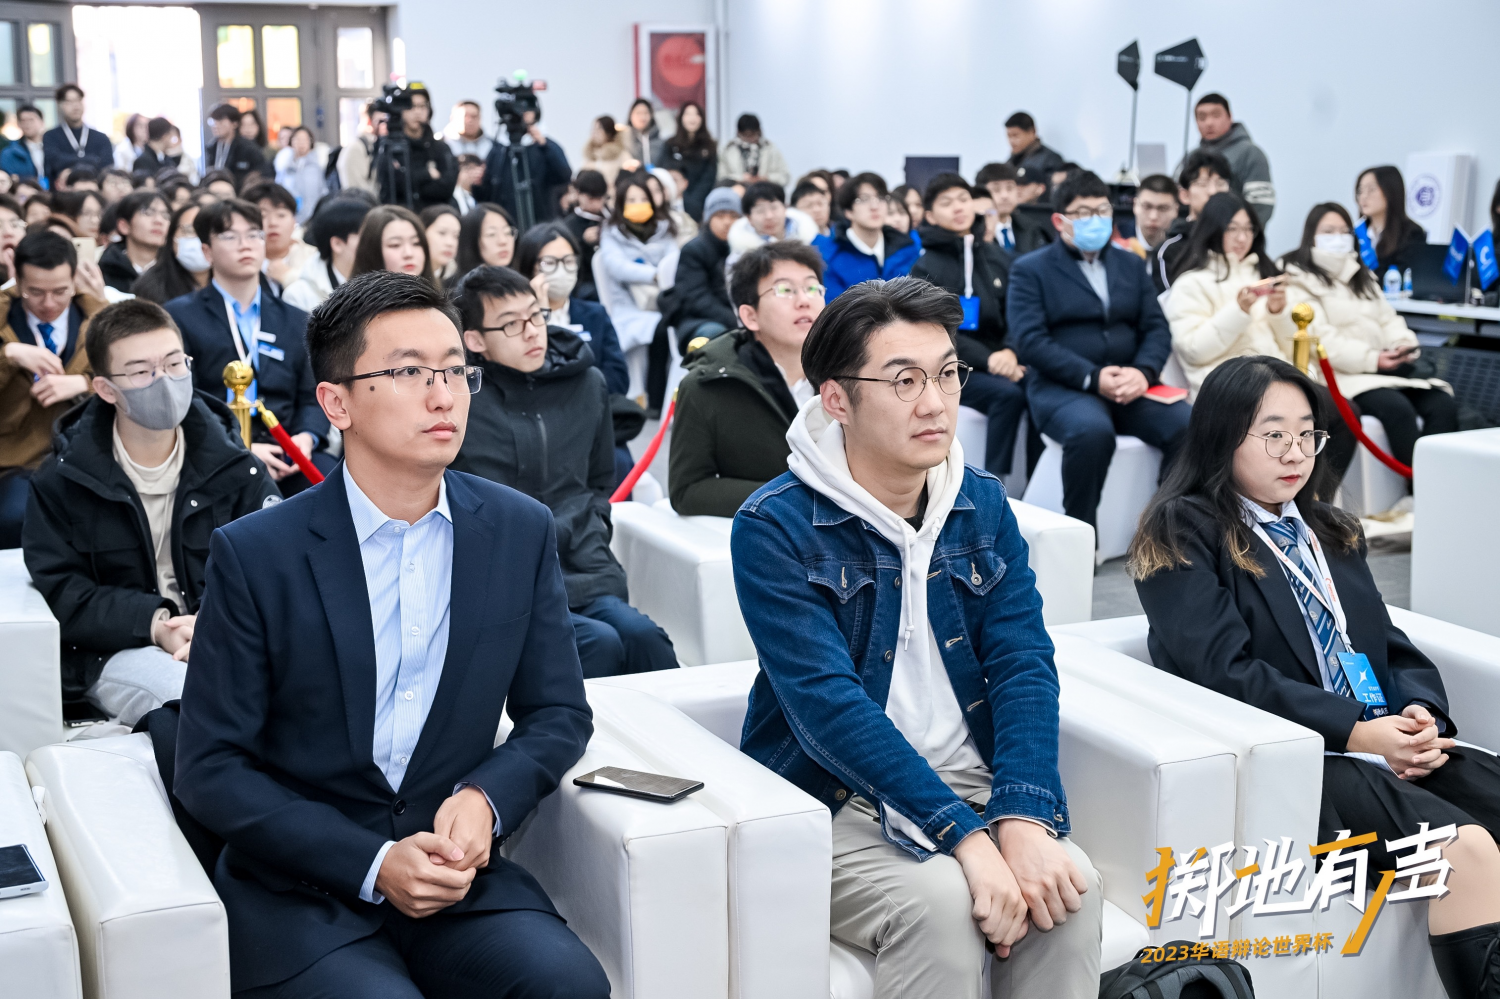 华语辩论世界杯作为一个当代青年交流思辨的国际化、高规格舞台